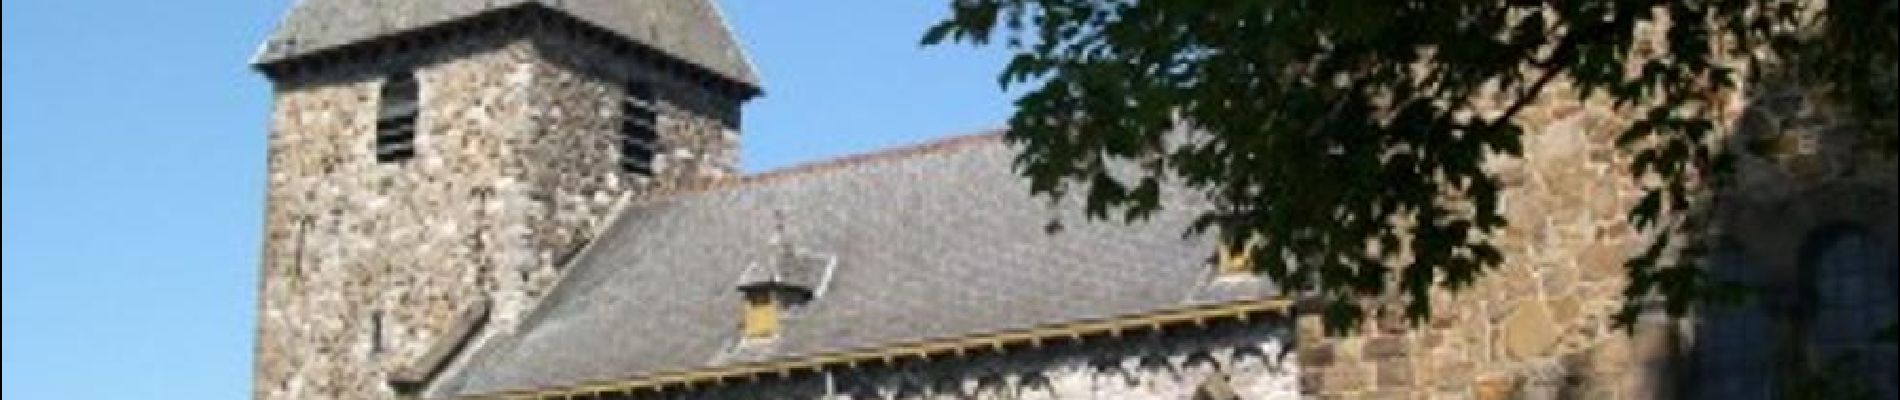 Punto di interesse Andenne - Eglise Saint-Pierre dite des Sarrasins d'Andenelle - Photo